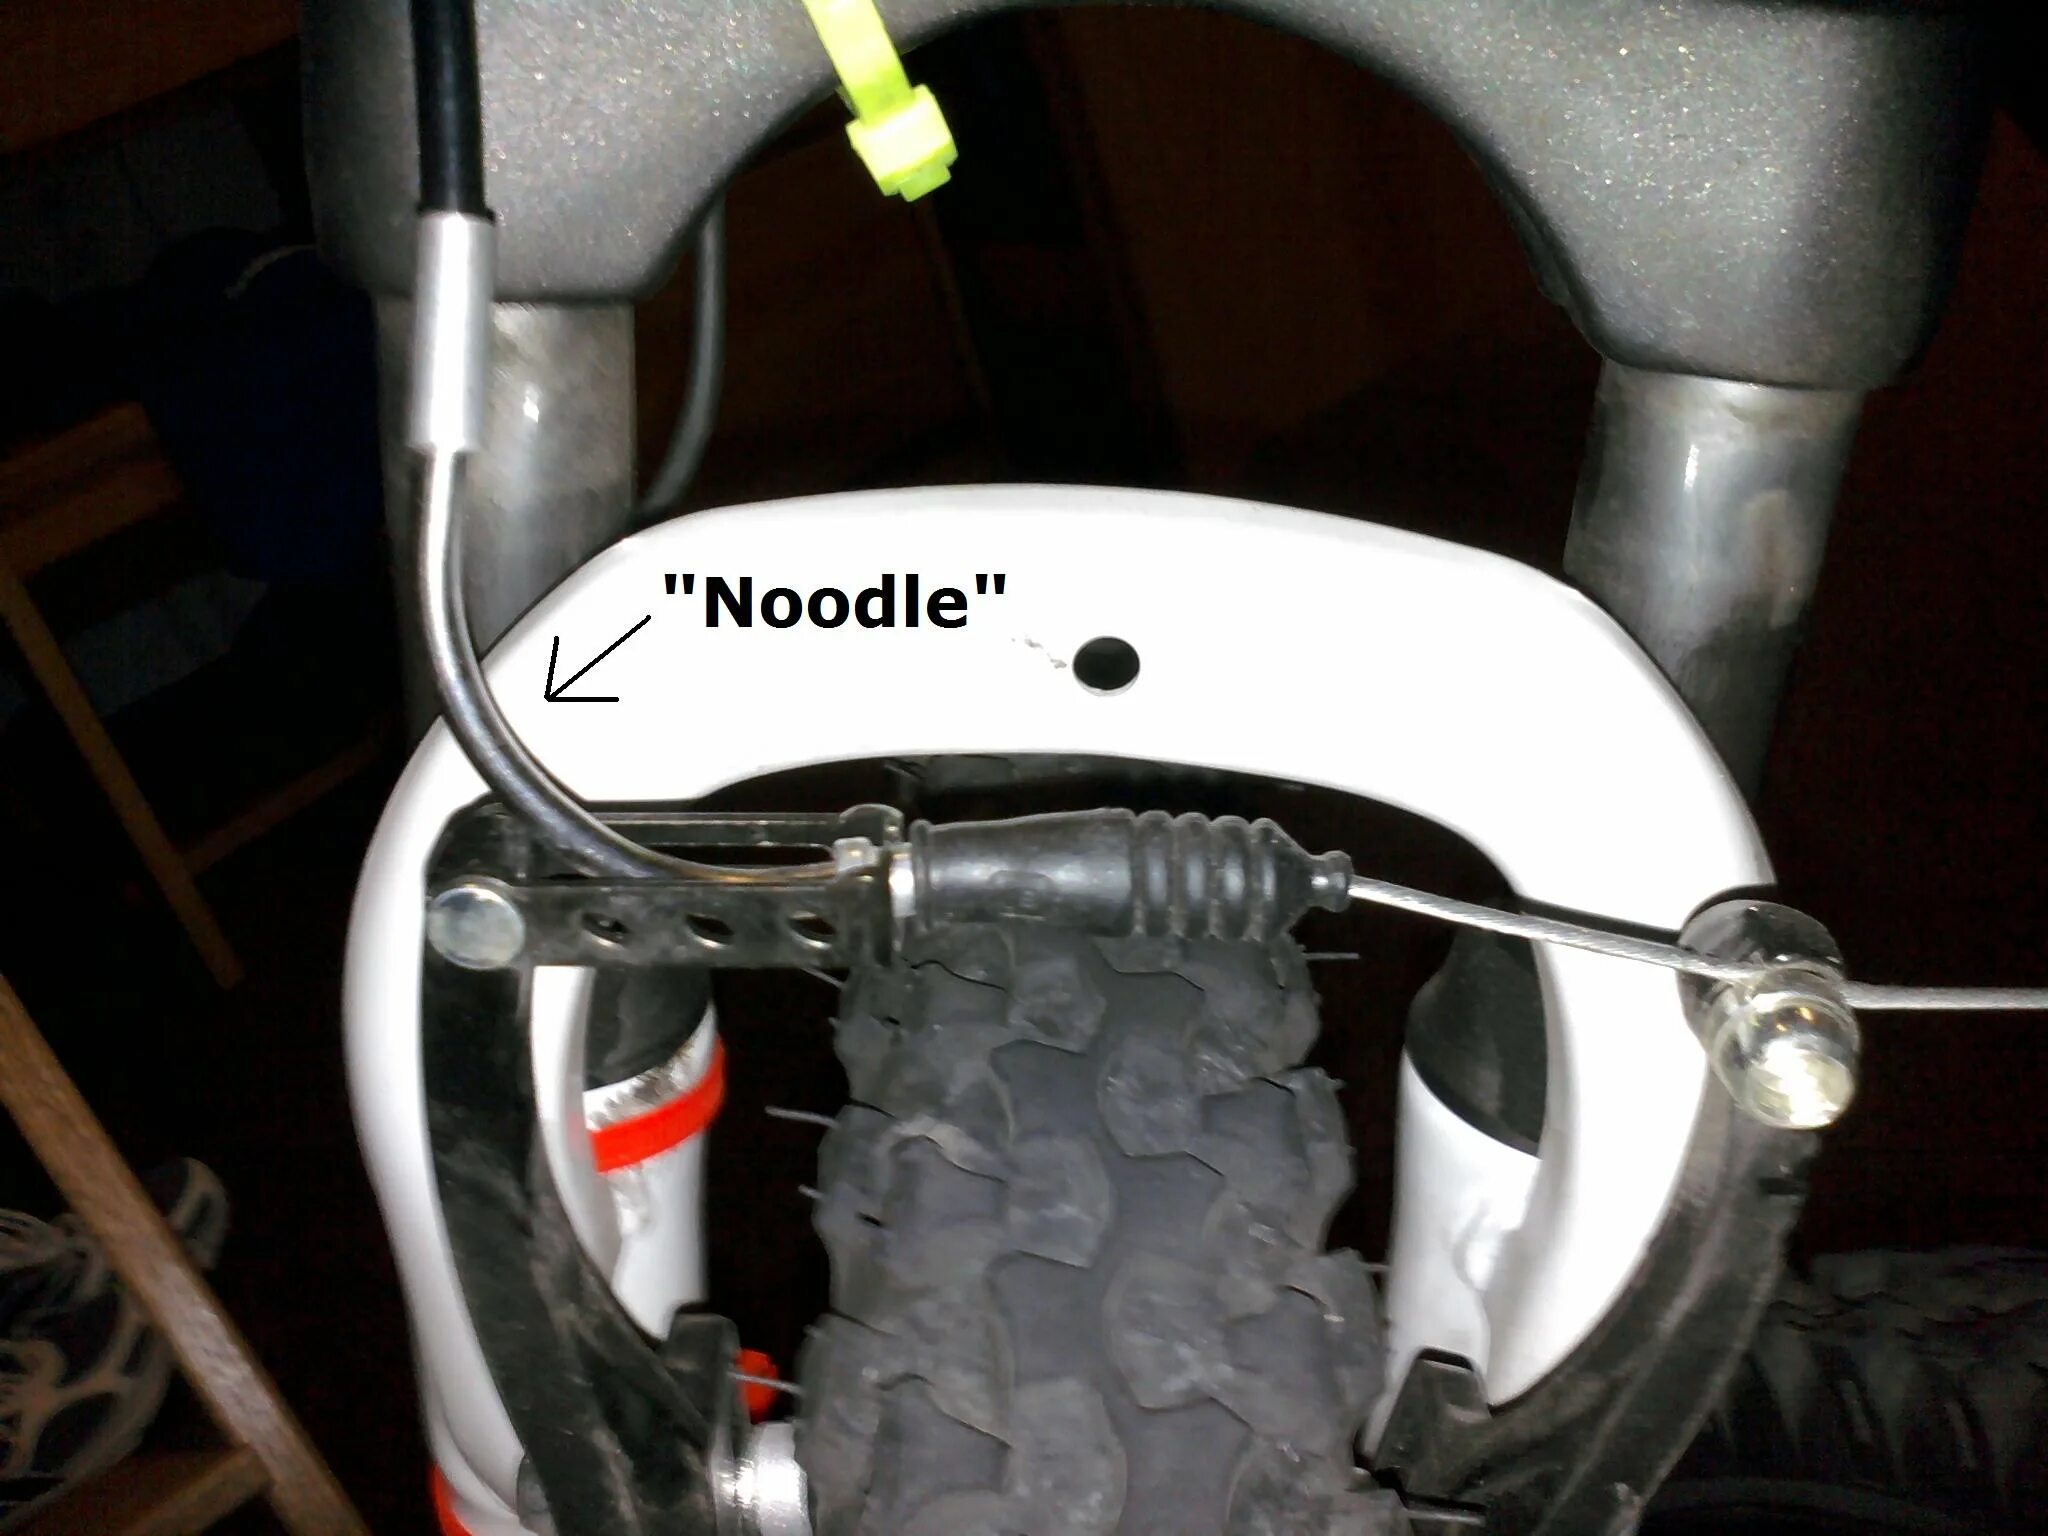 Как натянуть тормоза на велосипеде. Велосипед Noodle. Велосипед тормоза справа слева. Лапша на велосипеде. Велотормоза в шину.